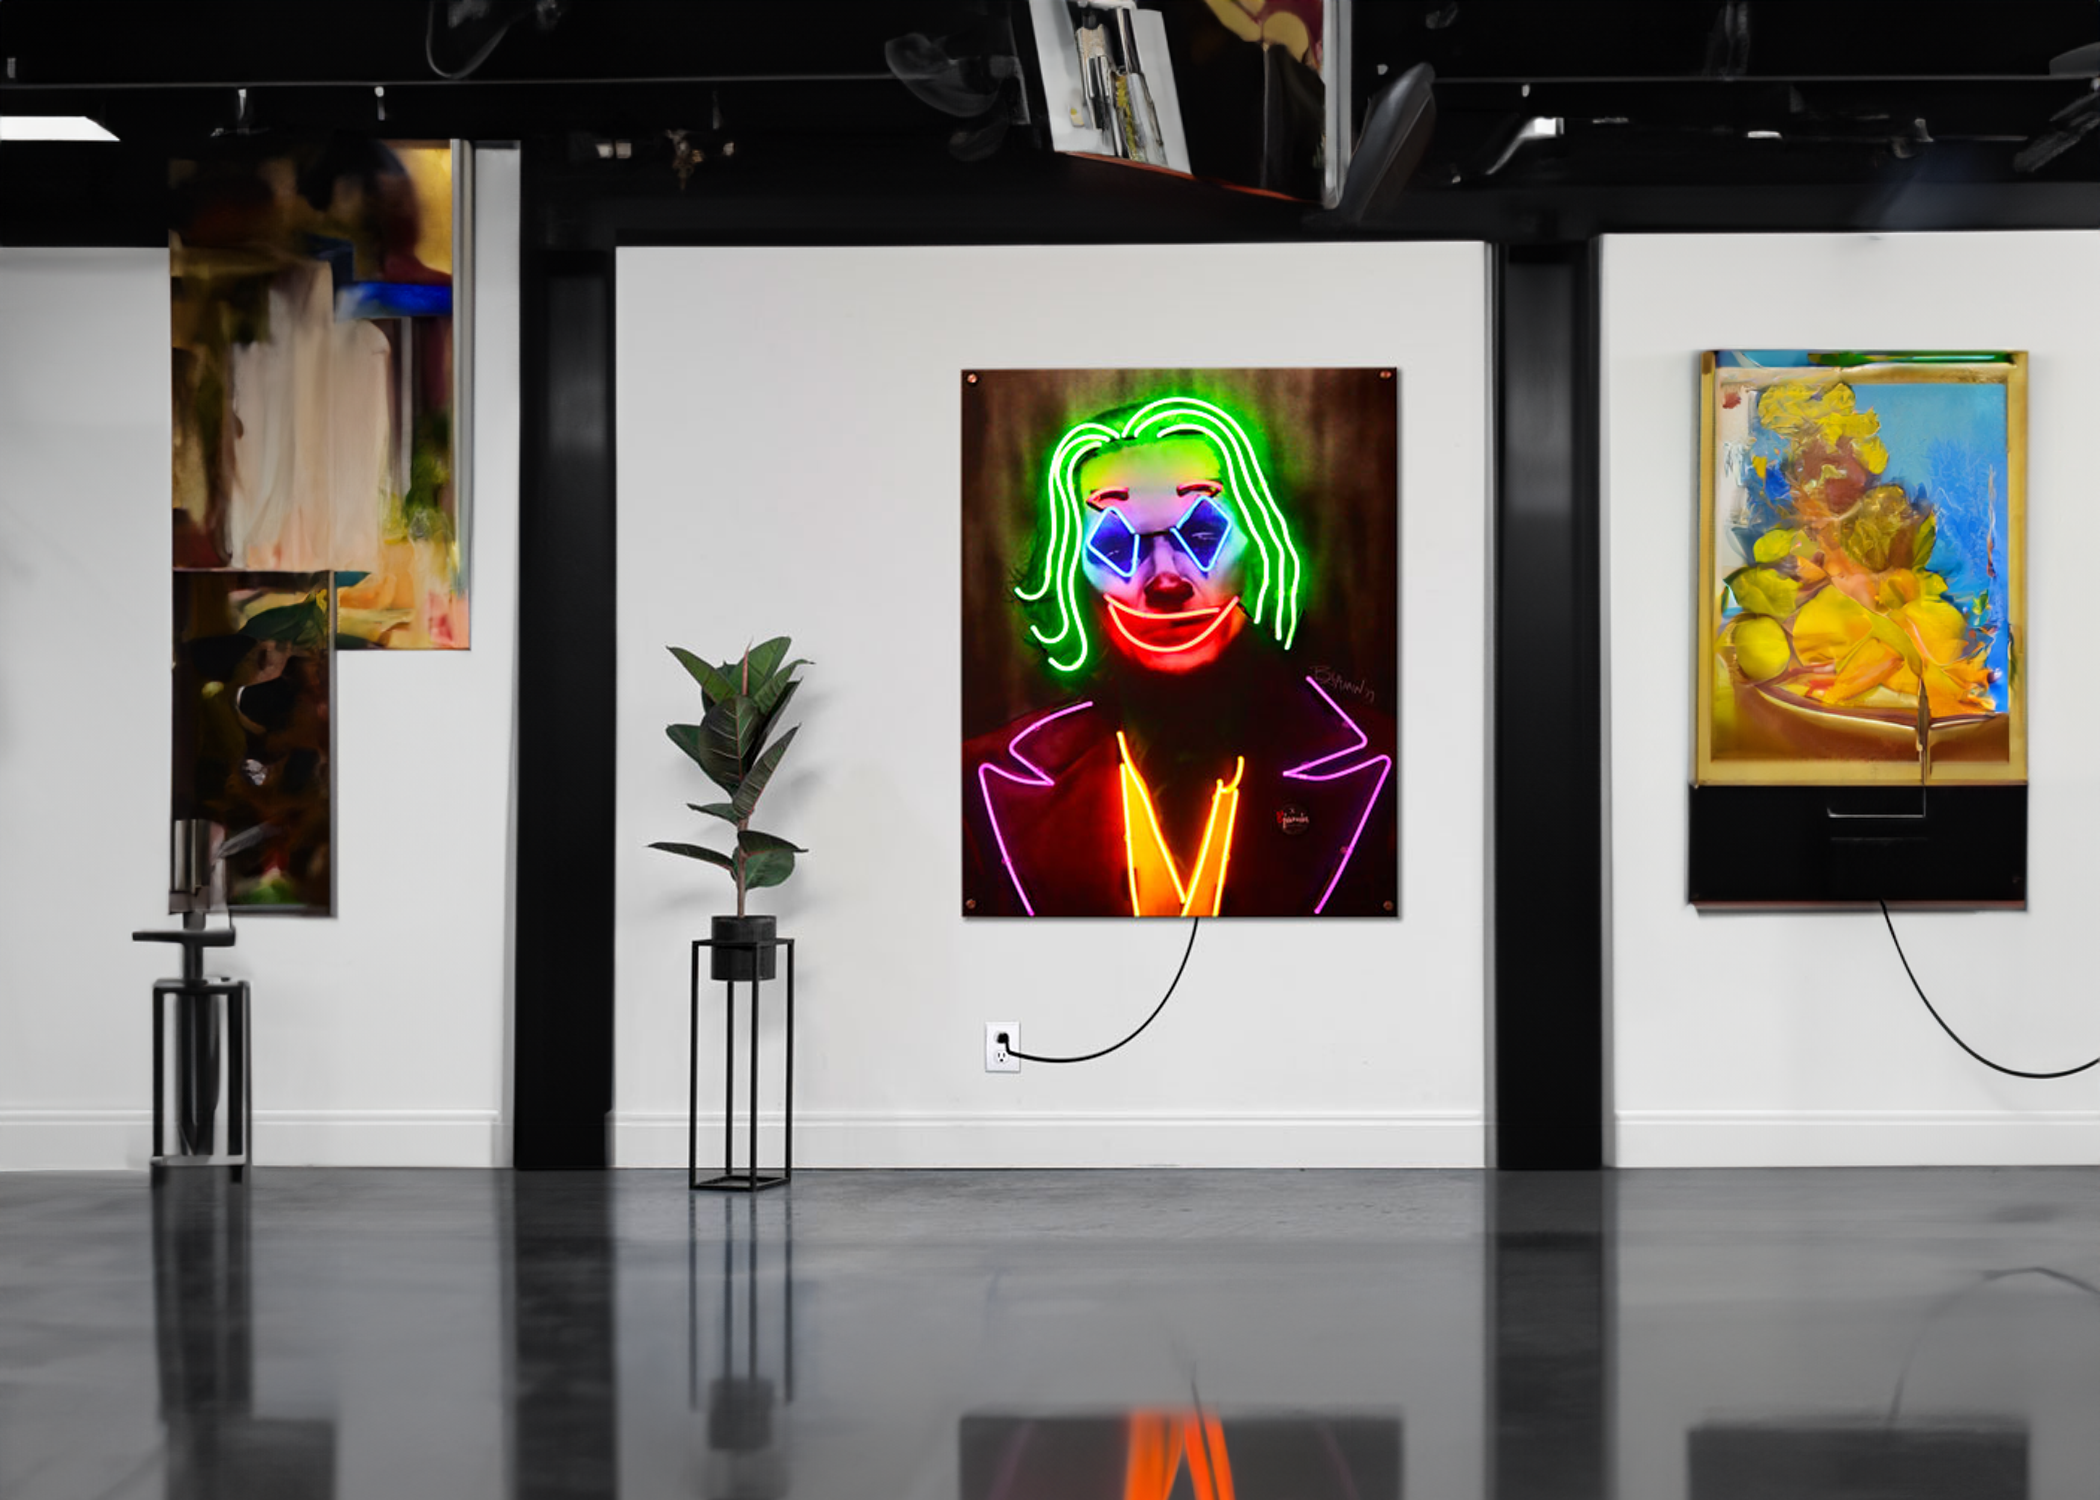 Joker Neon Sign in Gallery